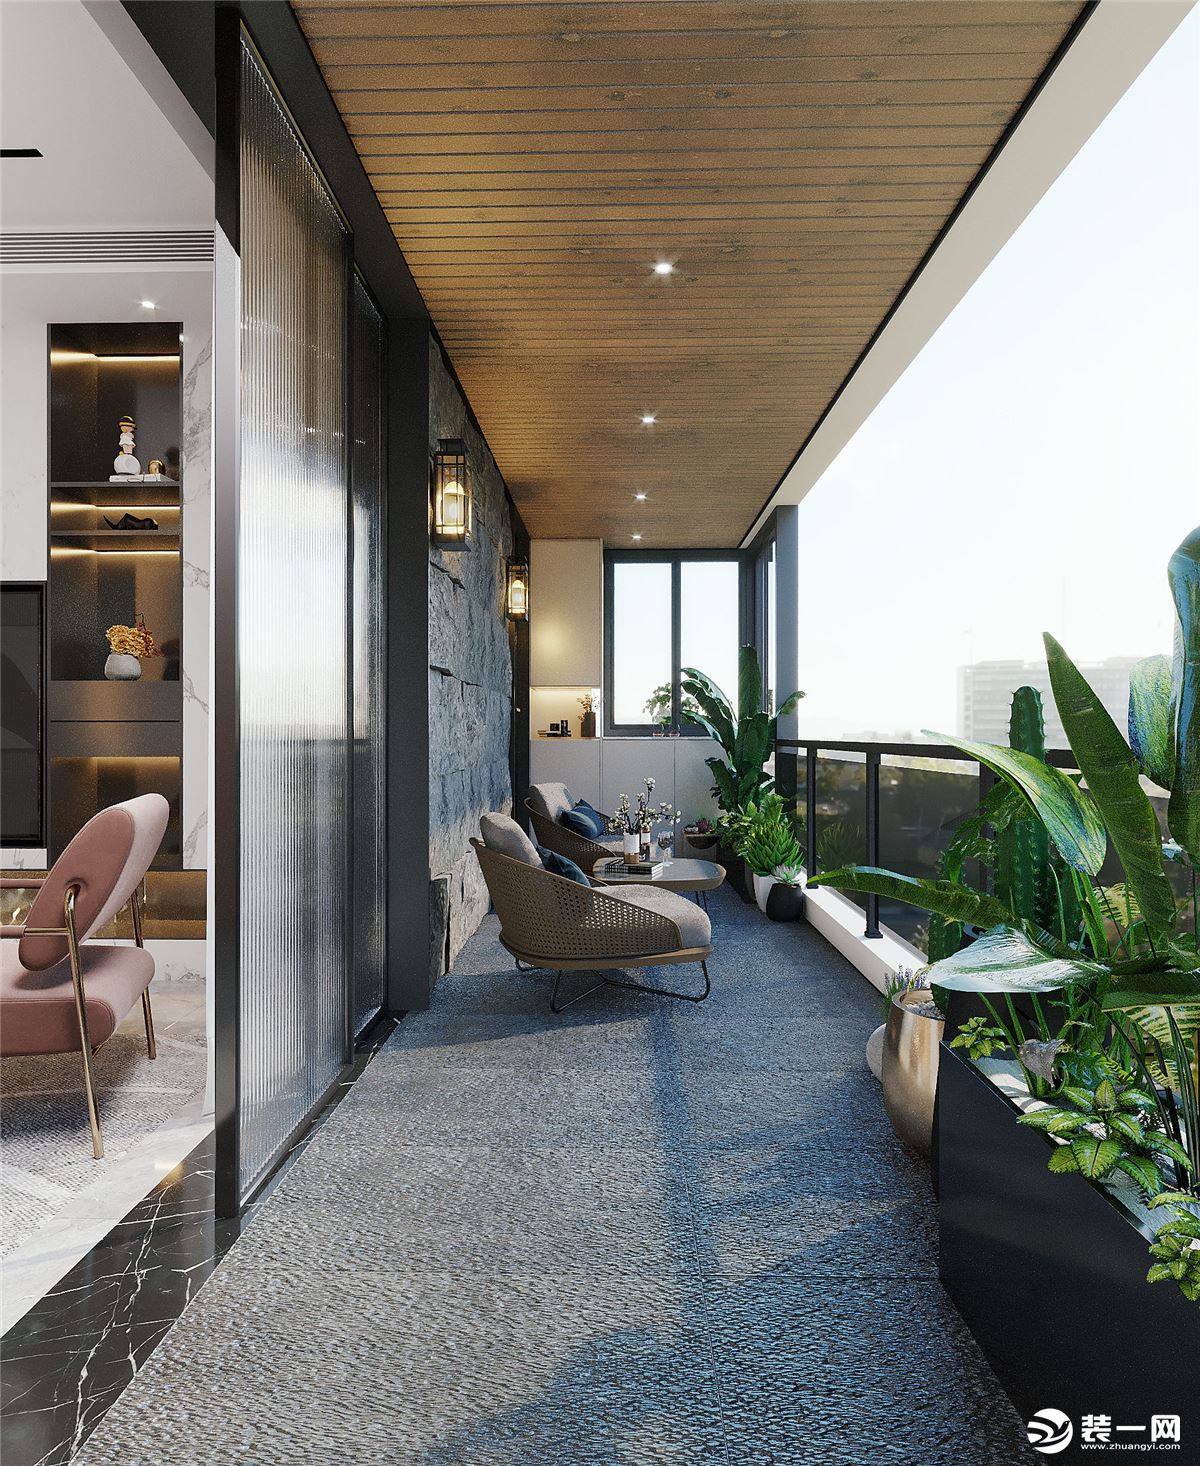 阳台通过设计可以将 空间利用起来，打造休闲区，可以提升生活品质。